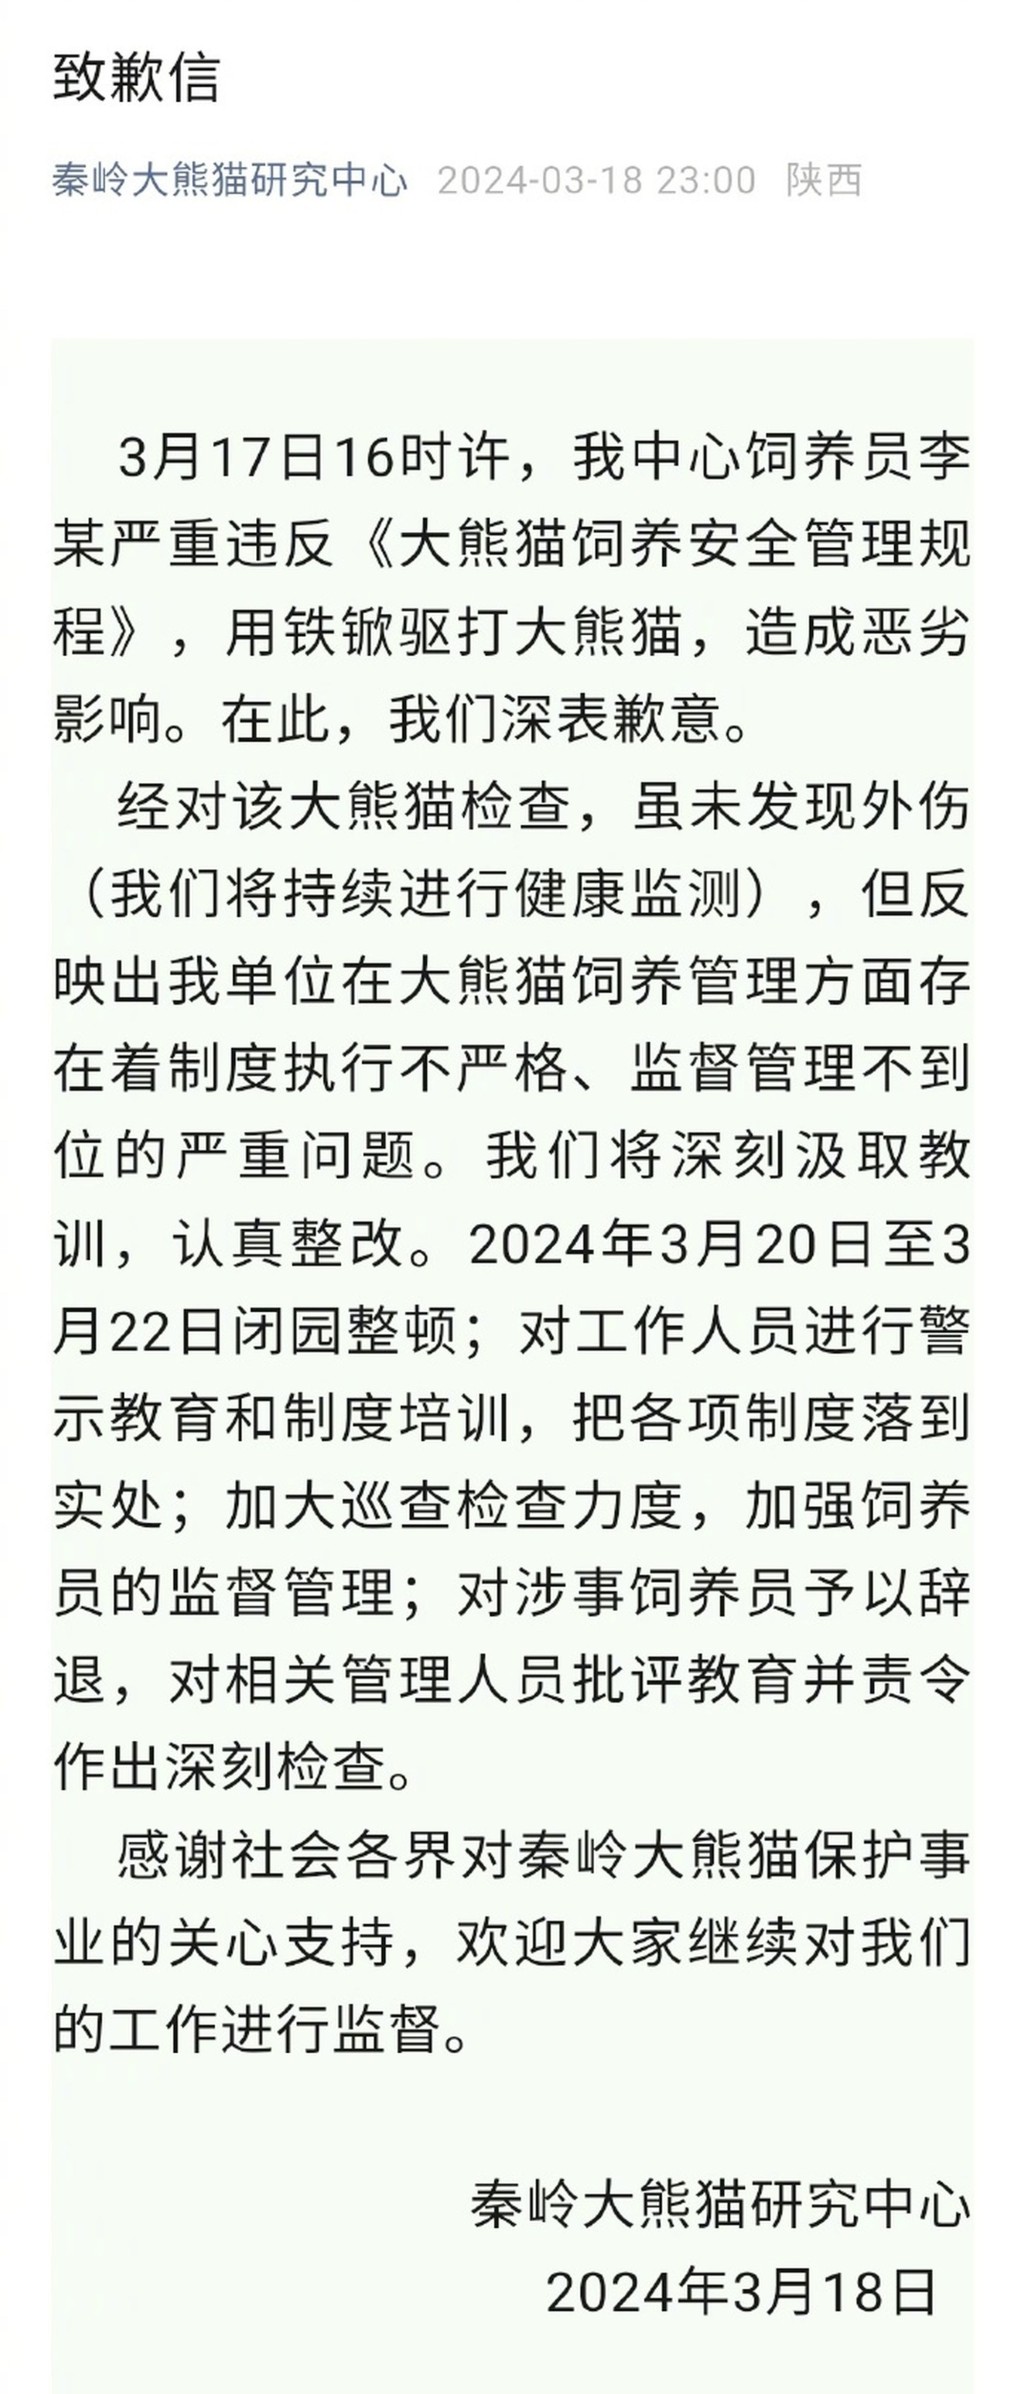 秦岭大熊猫研究中心发布道歉声明。